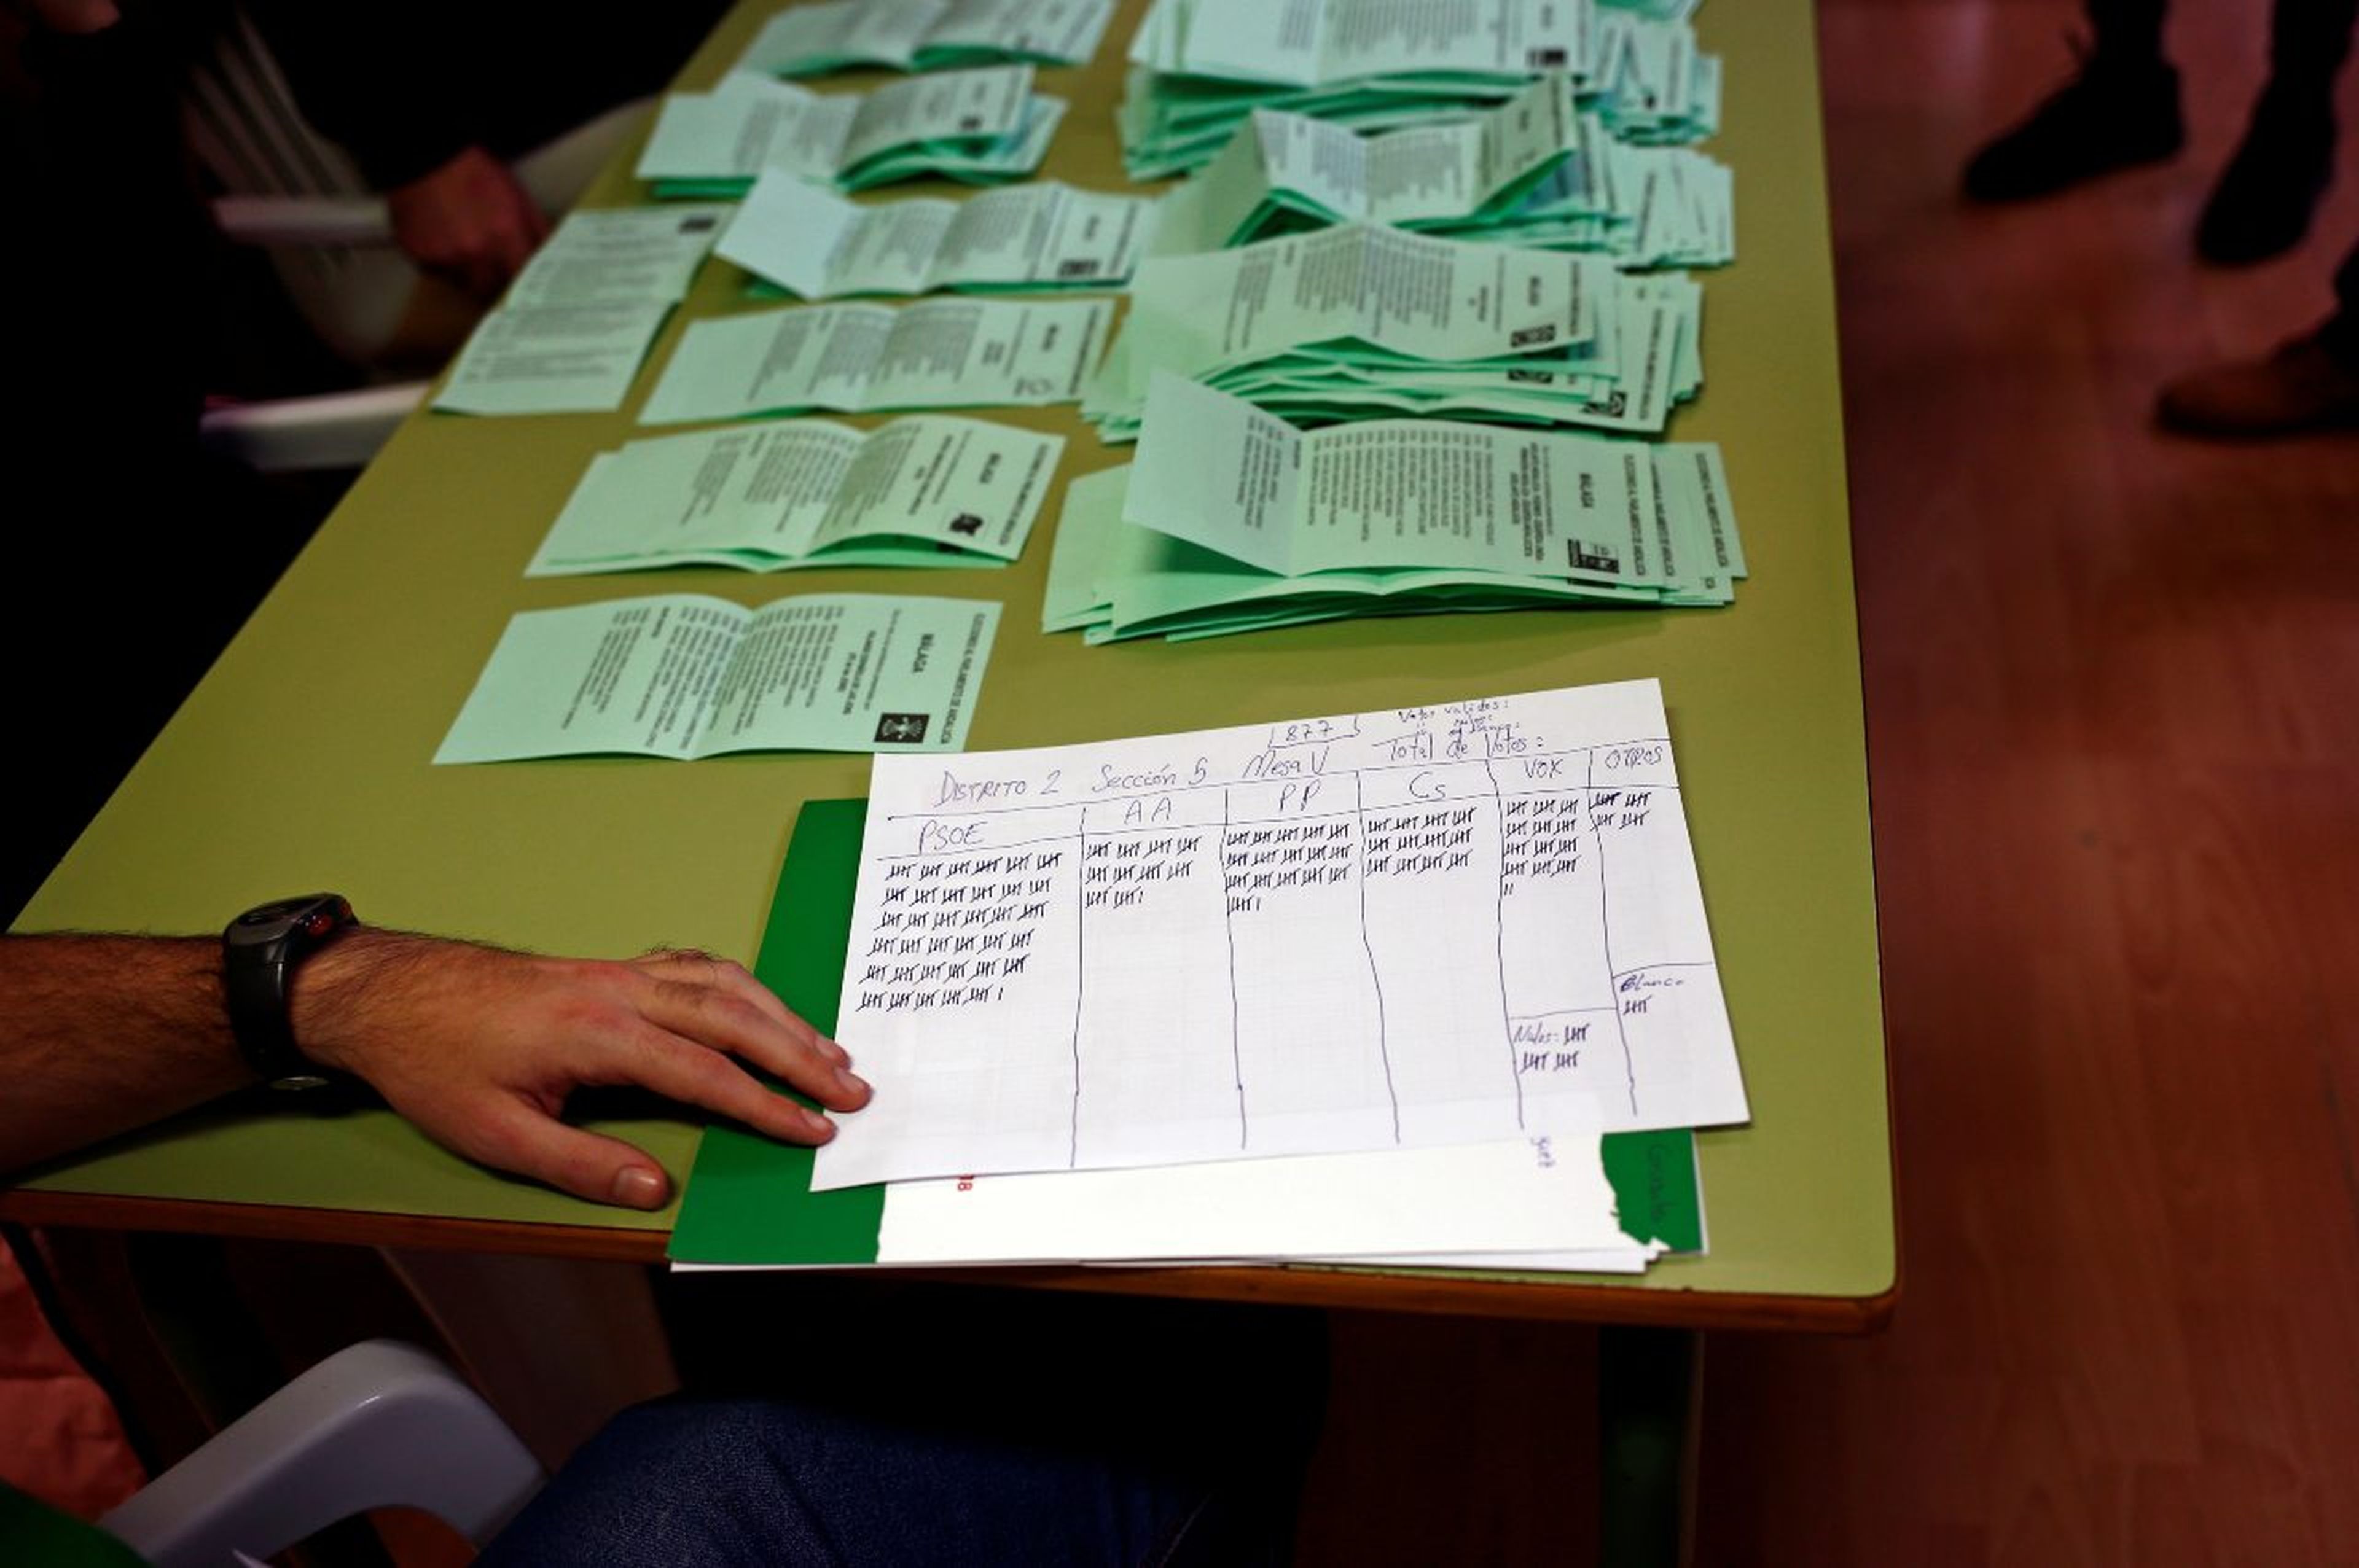 Resultado del recuento de votos en una mesa electoral